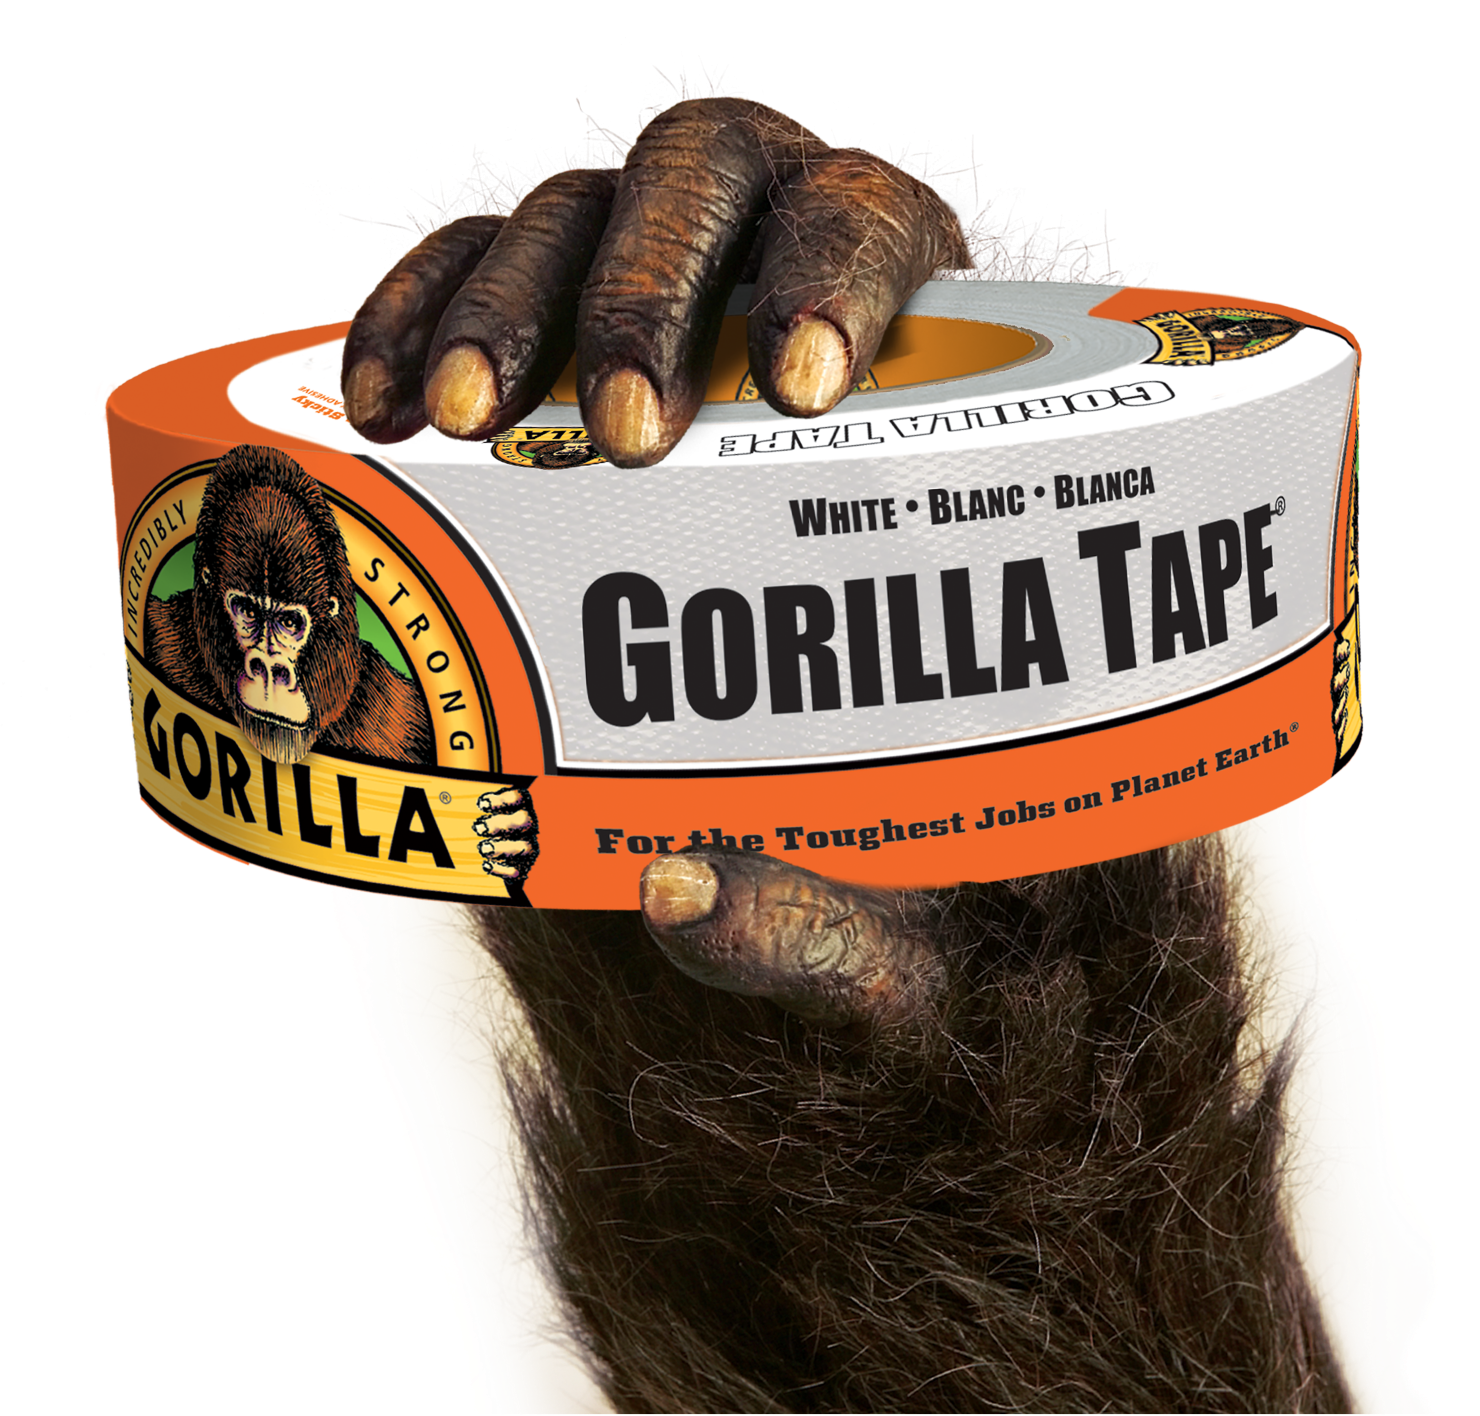 6025001 - Gorilla Glue 6025001 - White Gorilla Tape, 30 yd.